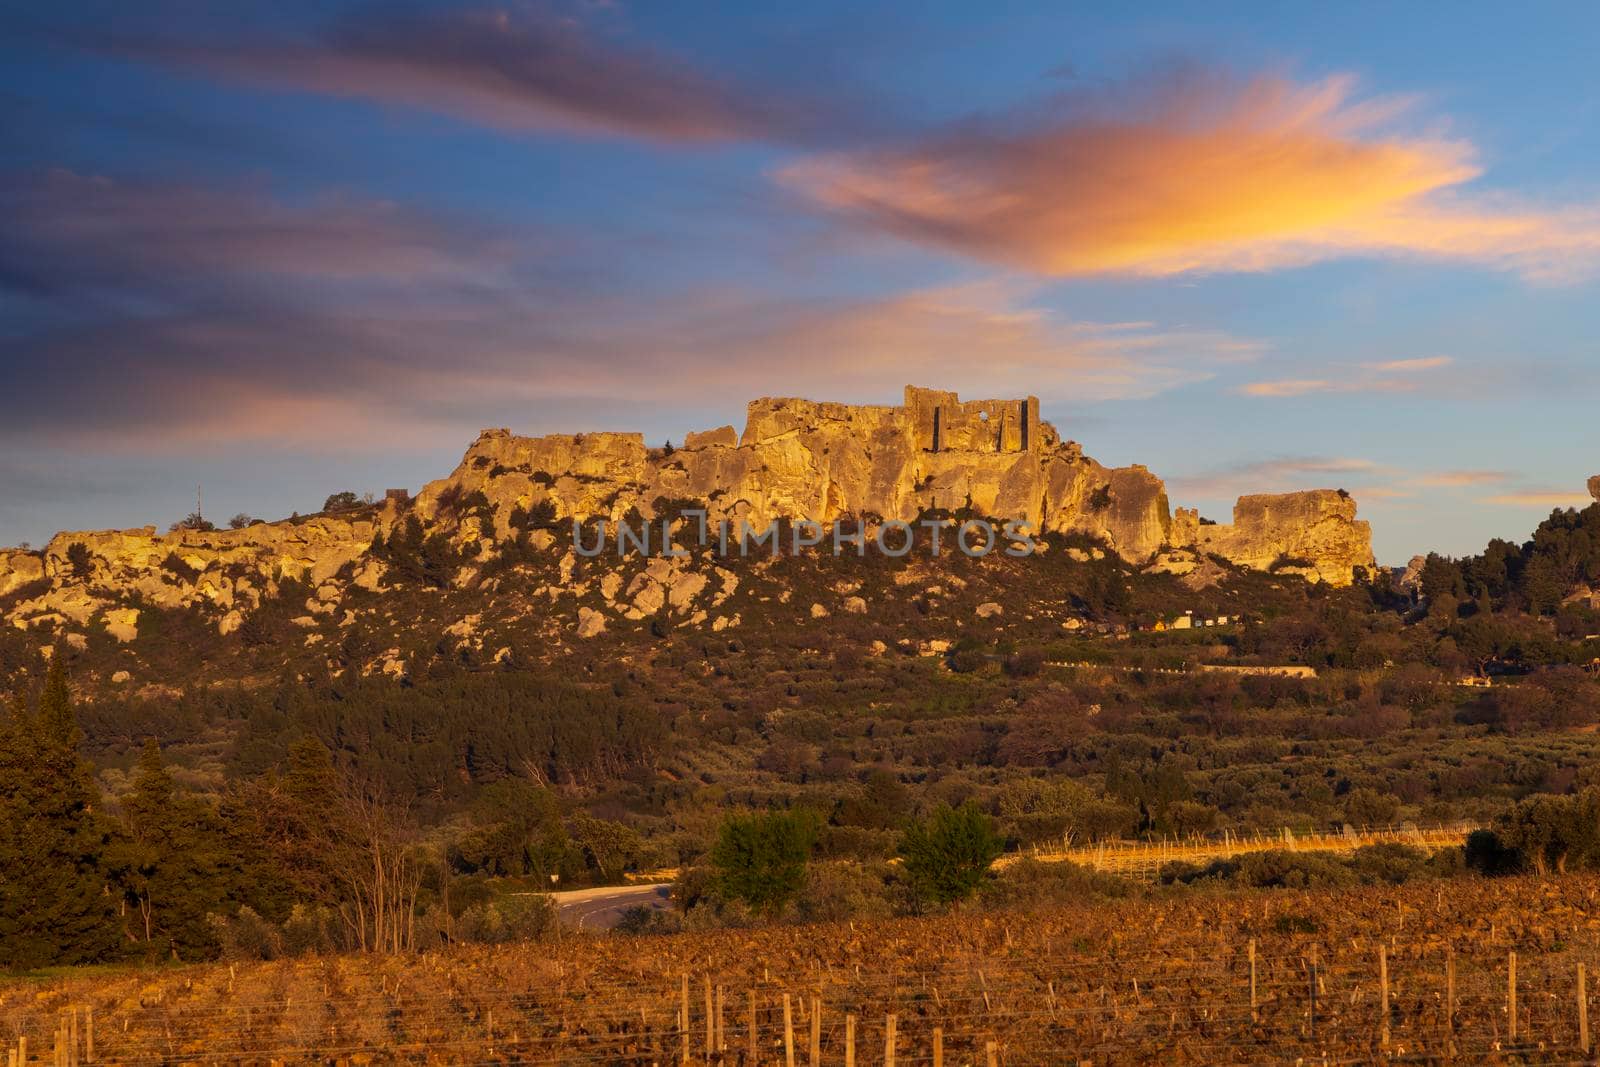 Medieval castle and village, Les Baux-de-Provence, Alpilles mountains, Provence, France by phbcz